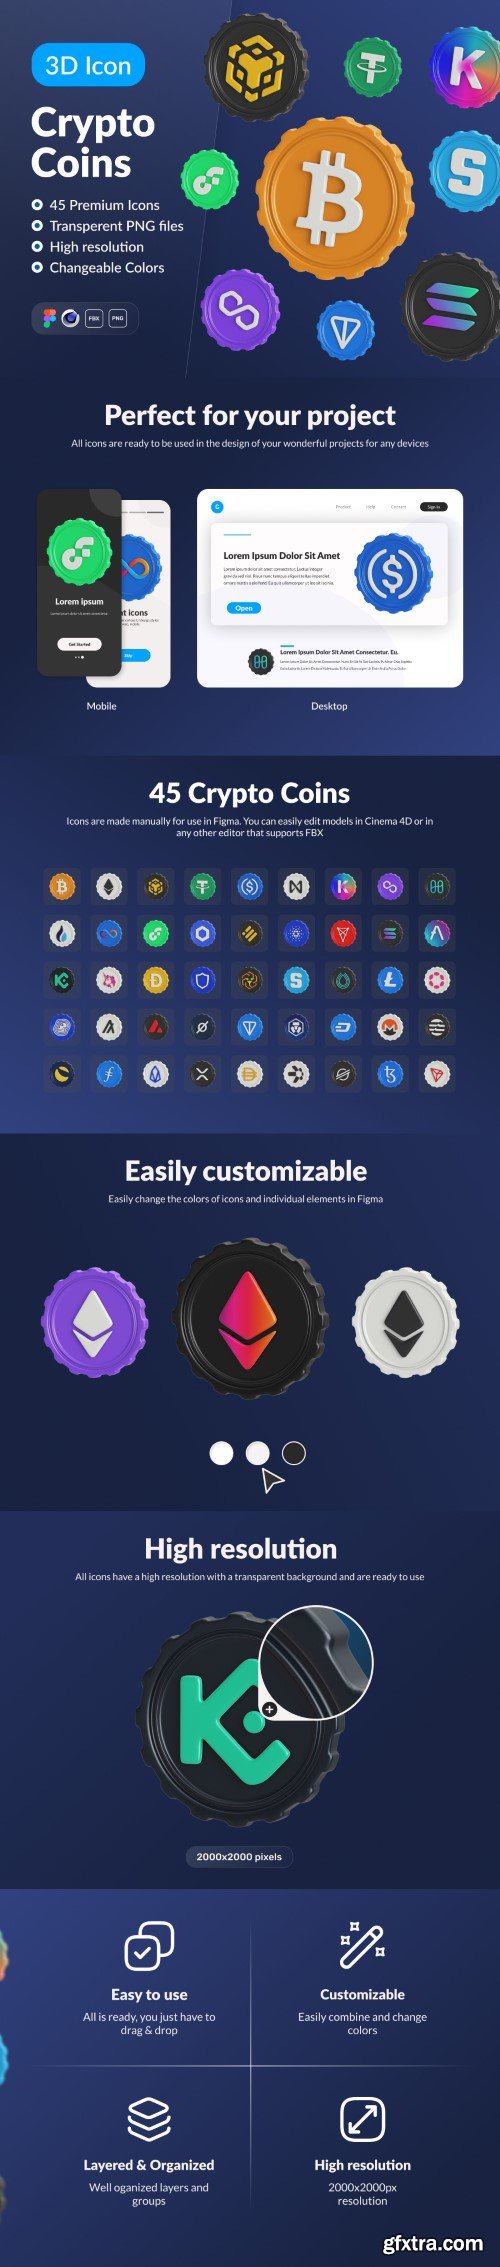 UI8 - Crypto Coins: 3D Icon Set